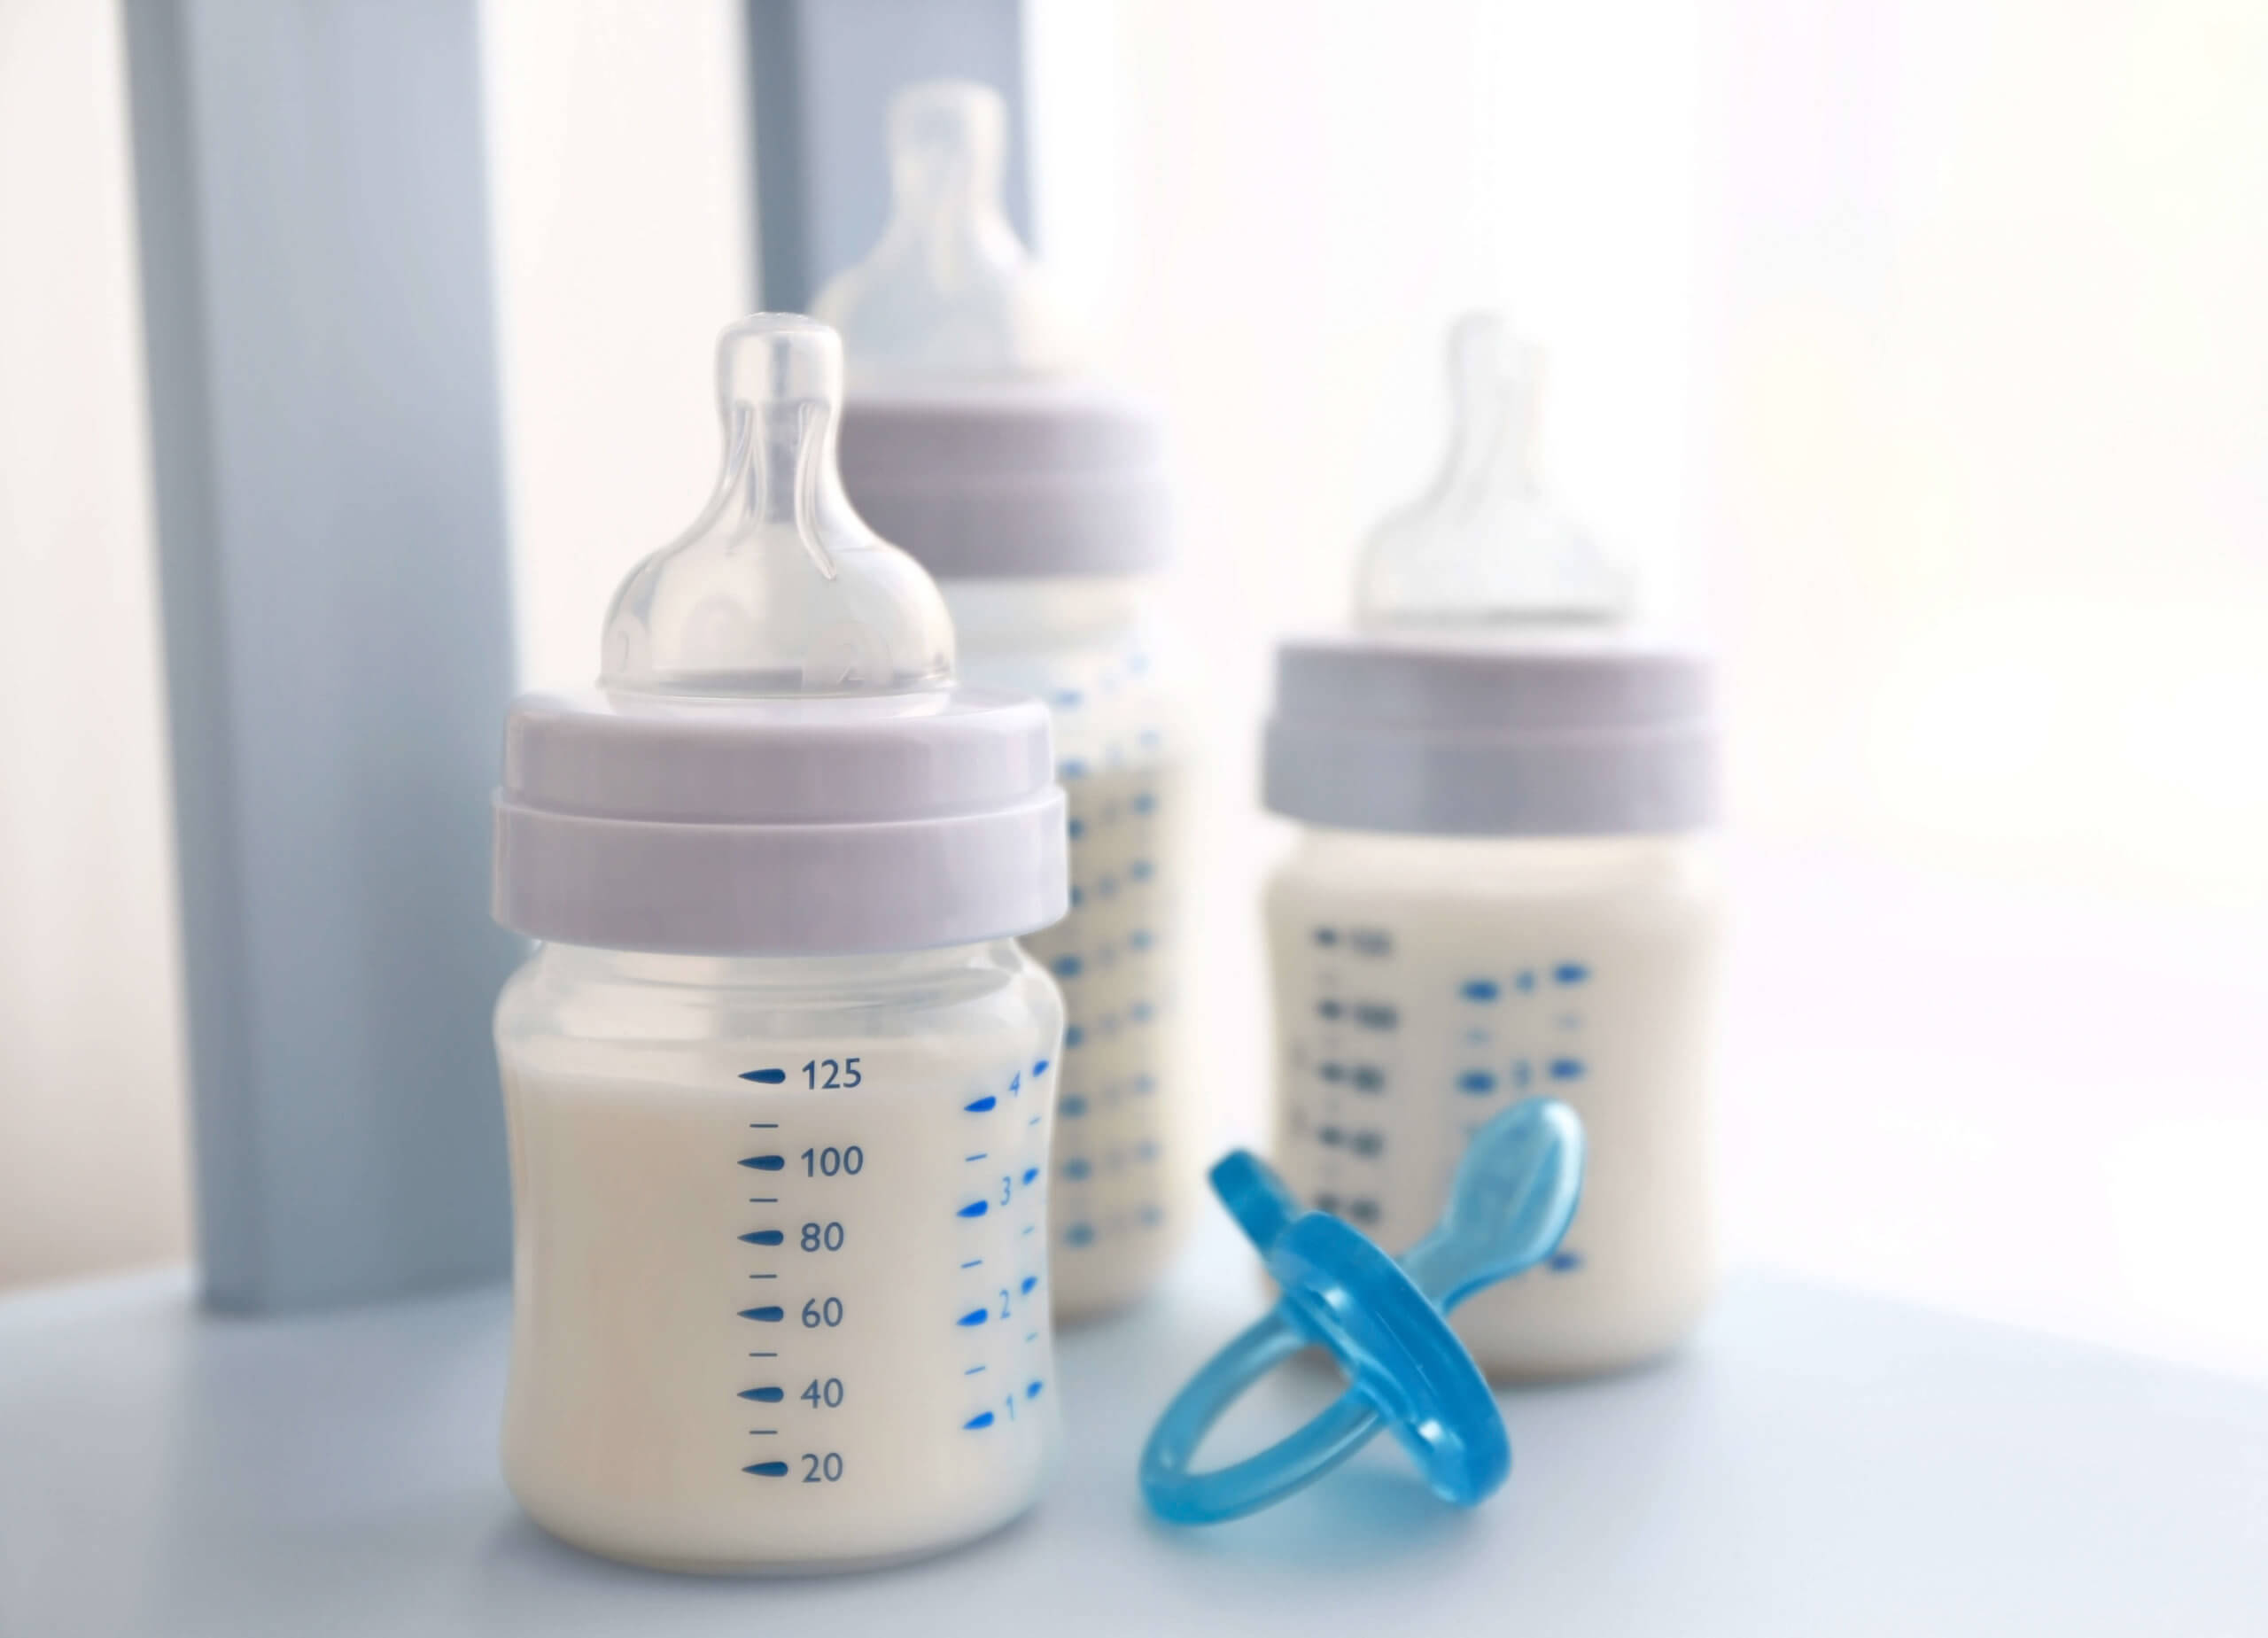 Chutnají všechna kojenecká mléka stejně?